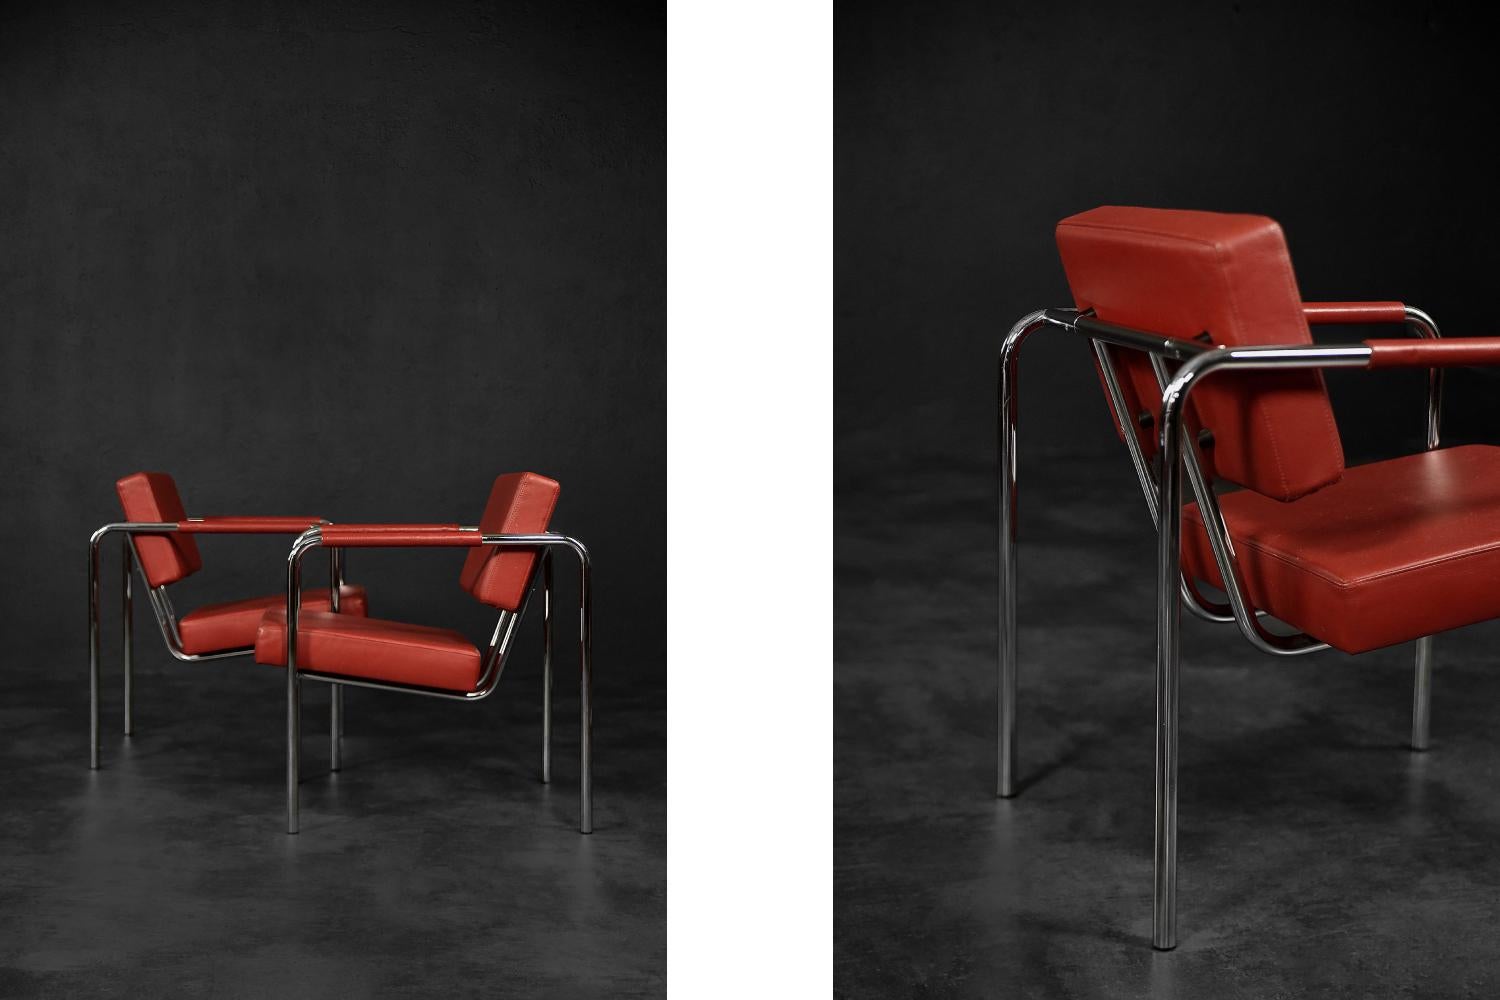 Cette paire de fauteuils super rares a été conçue par Torben Skov pour le fabricant danois Erik Jørgensen Møbelfabrik dans les années 1990. Il s'agit du modèle EJ 8. Le cadre géométrique est en métal chromé. L'assise et le dossier rectangulaires